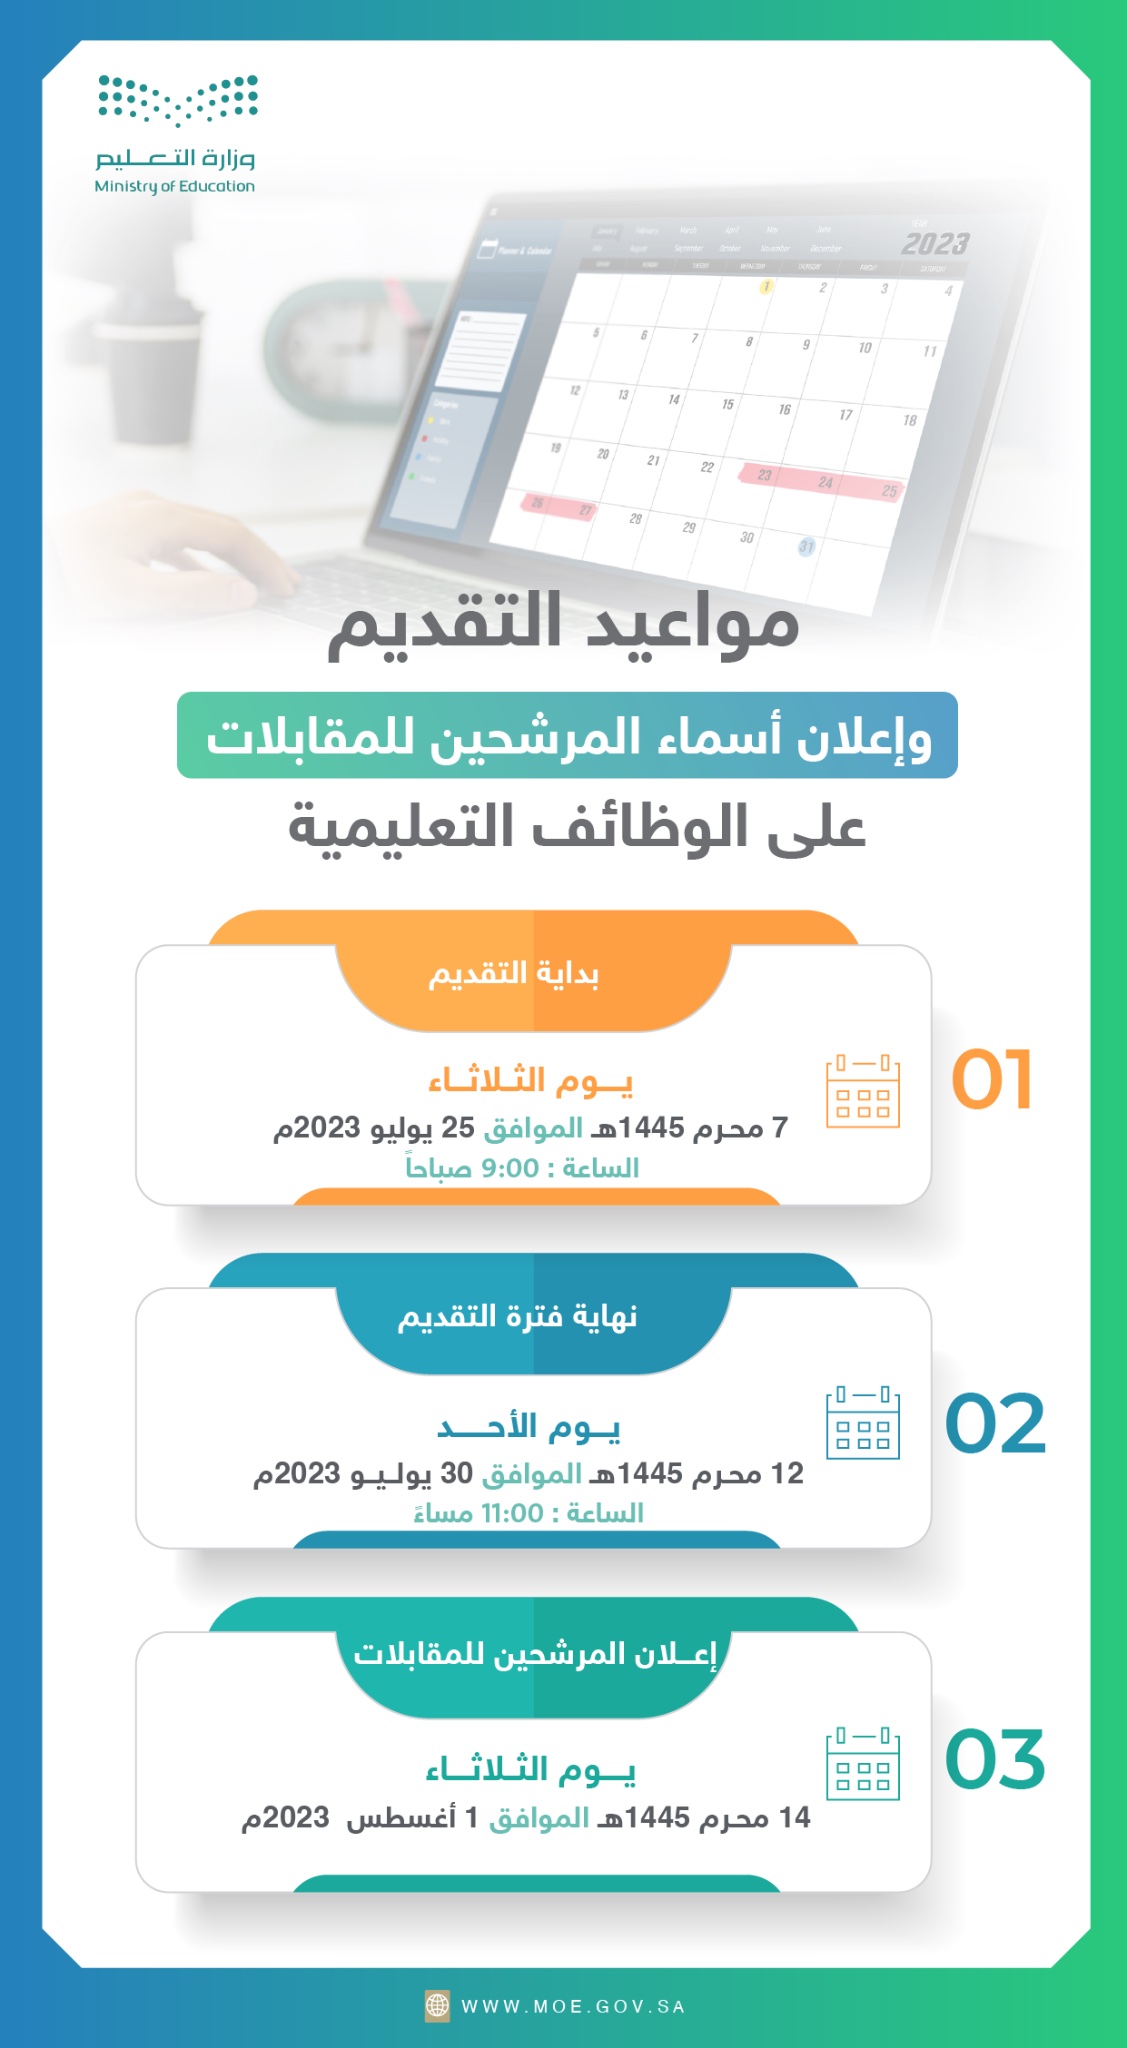 إعلان مواعيد التقديم وإعلان أسماء المرشحين للمقابلات على الوظائف التعليمية - مدونة التقنية العربية